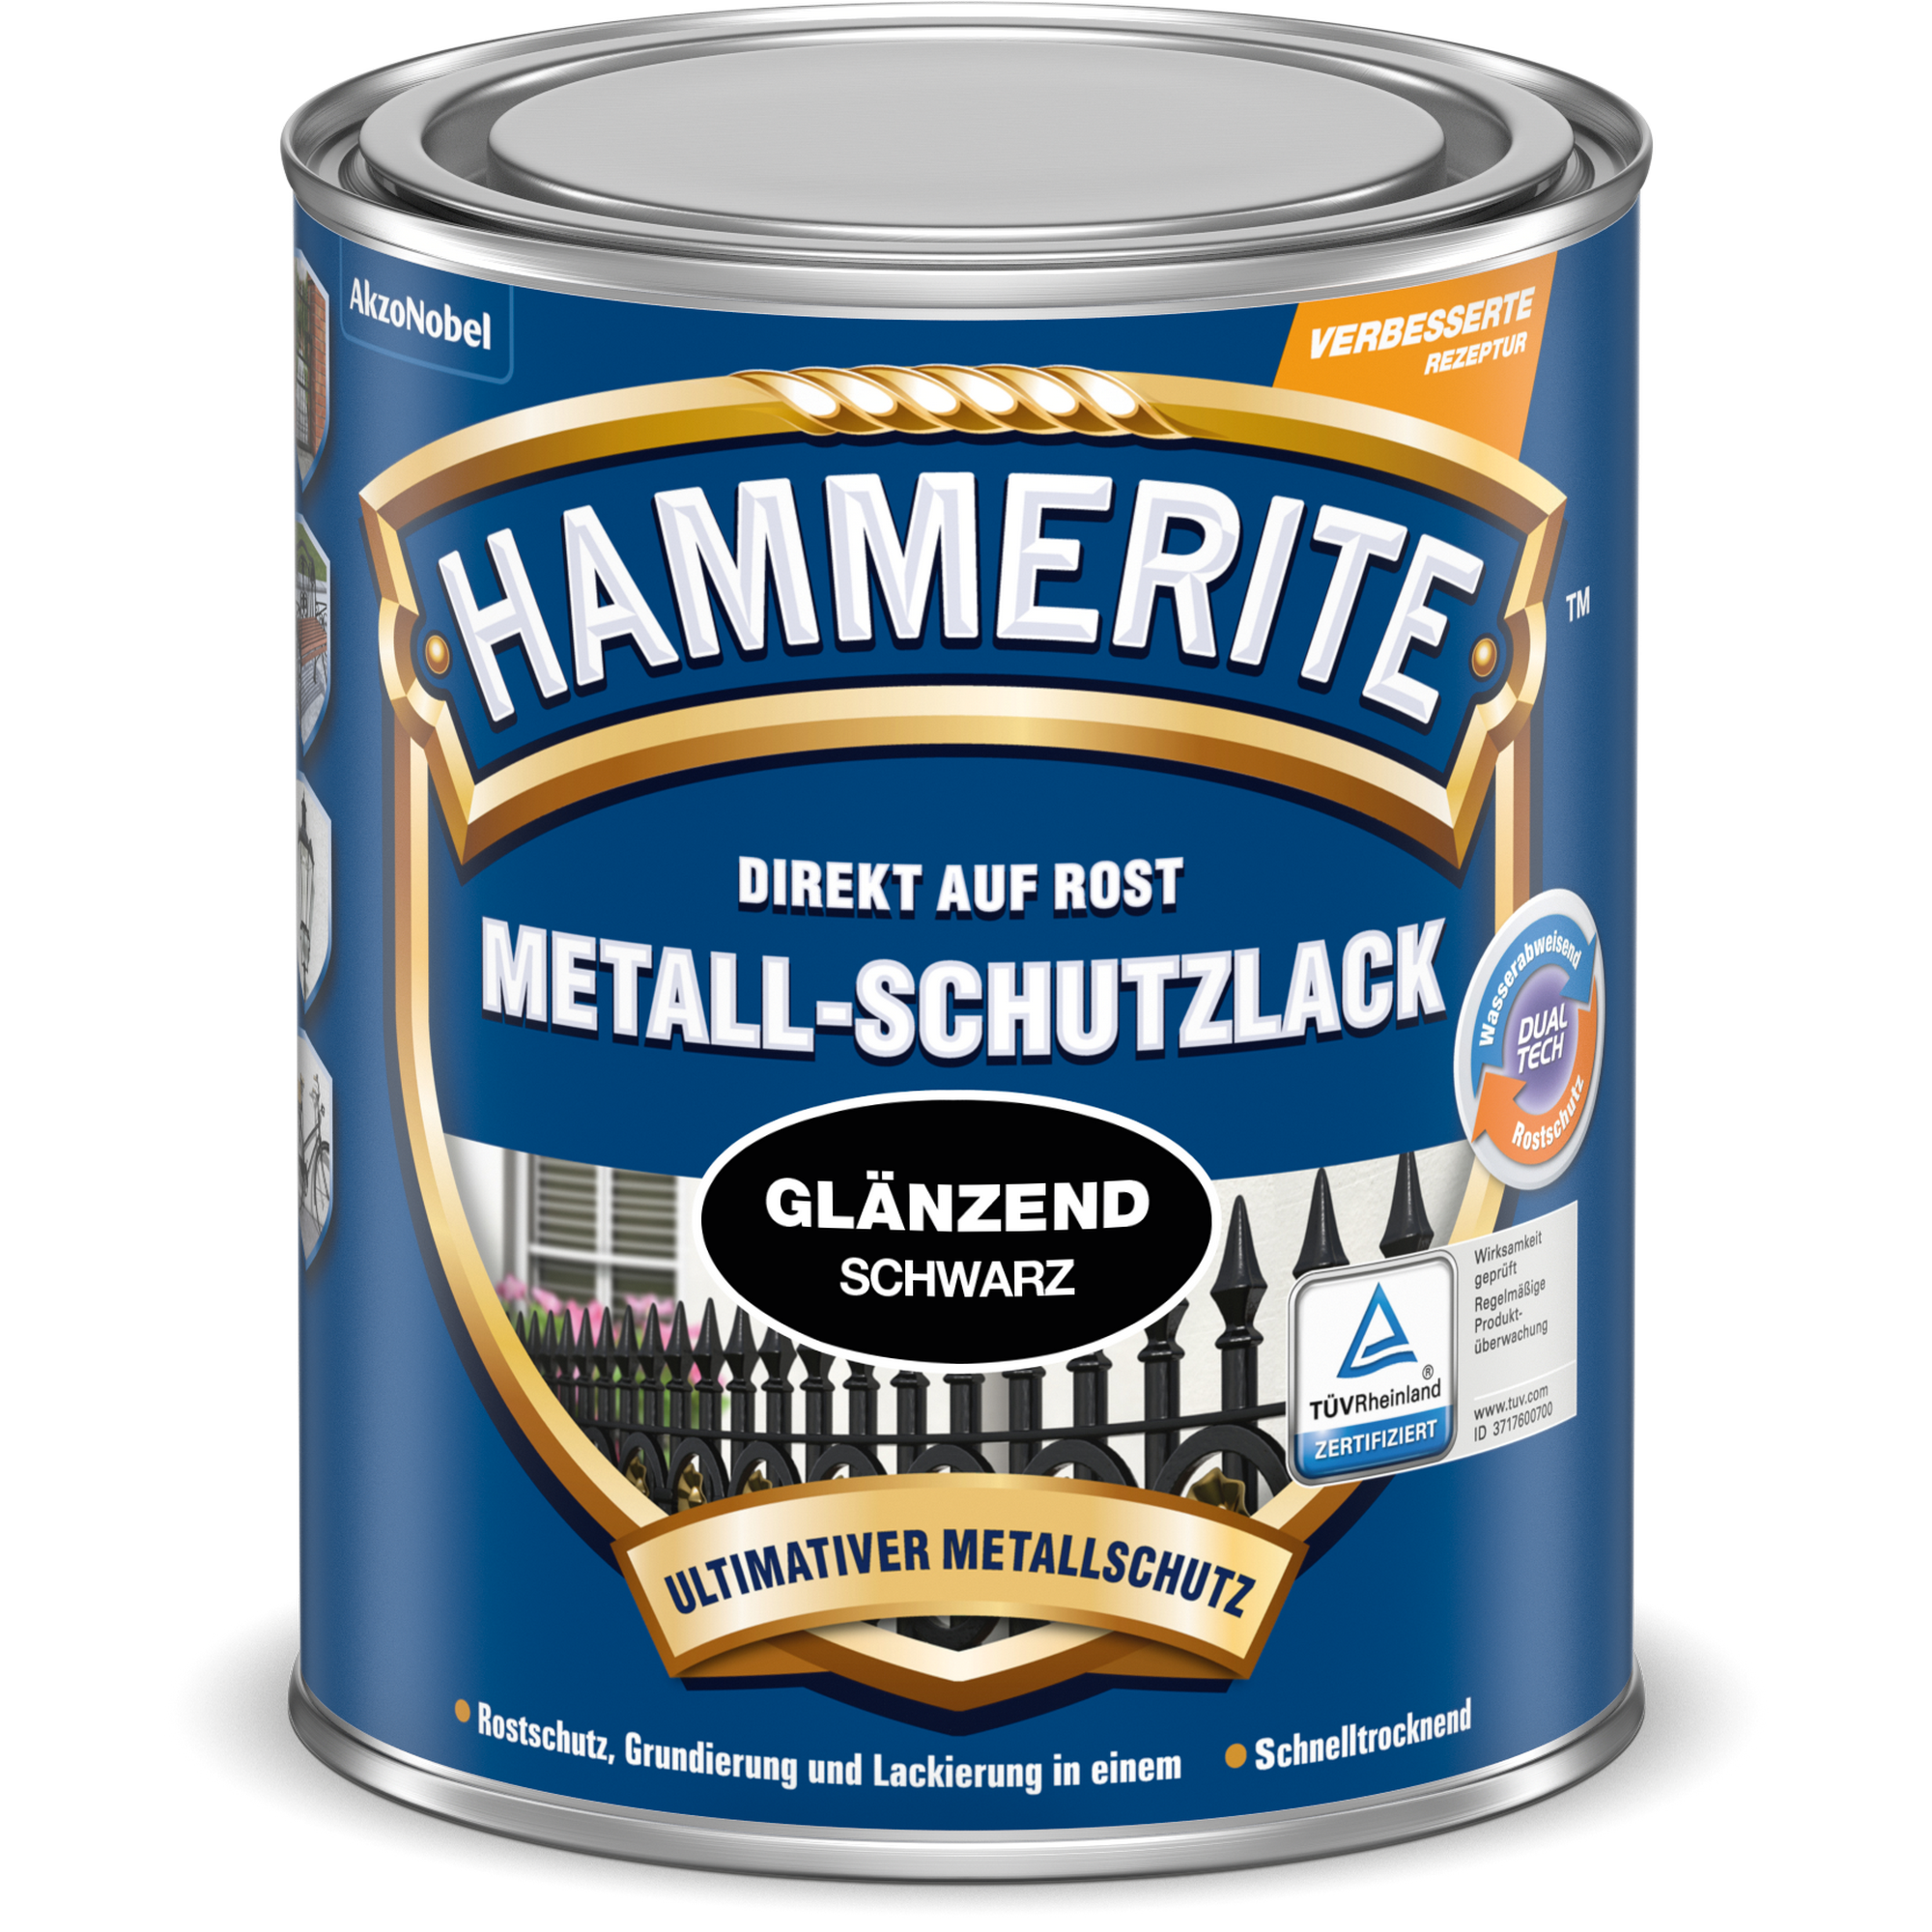 Metallschutzlack schwarz glänzend 250 ml + product picture